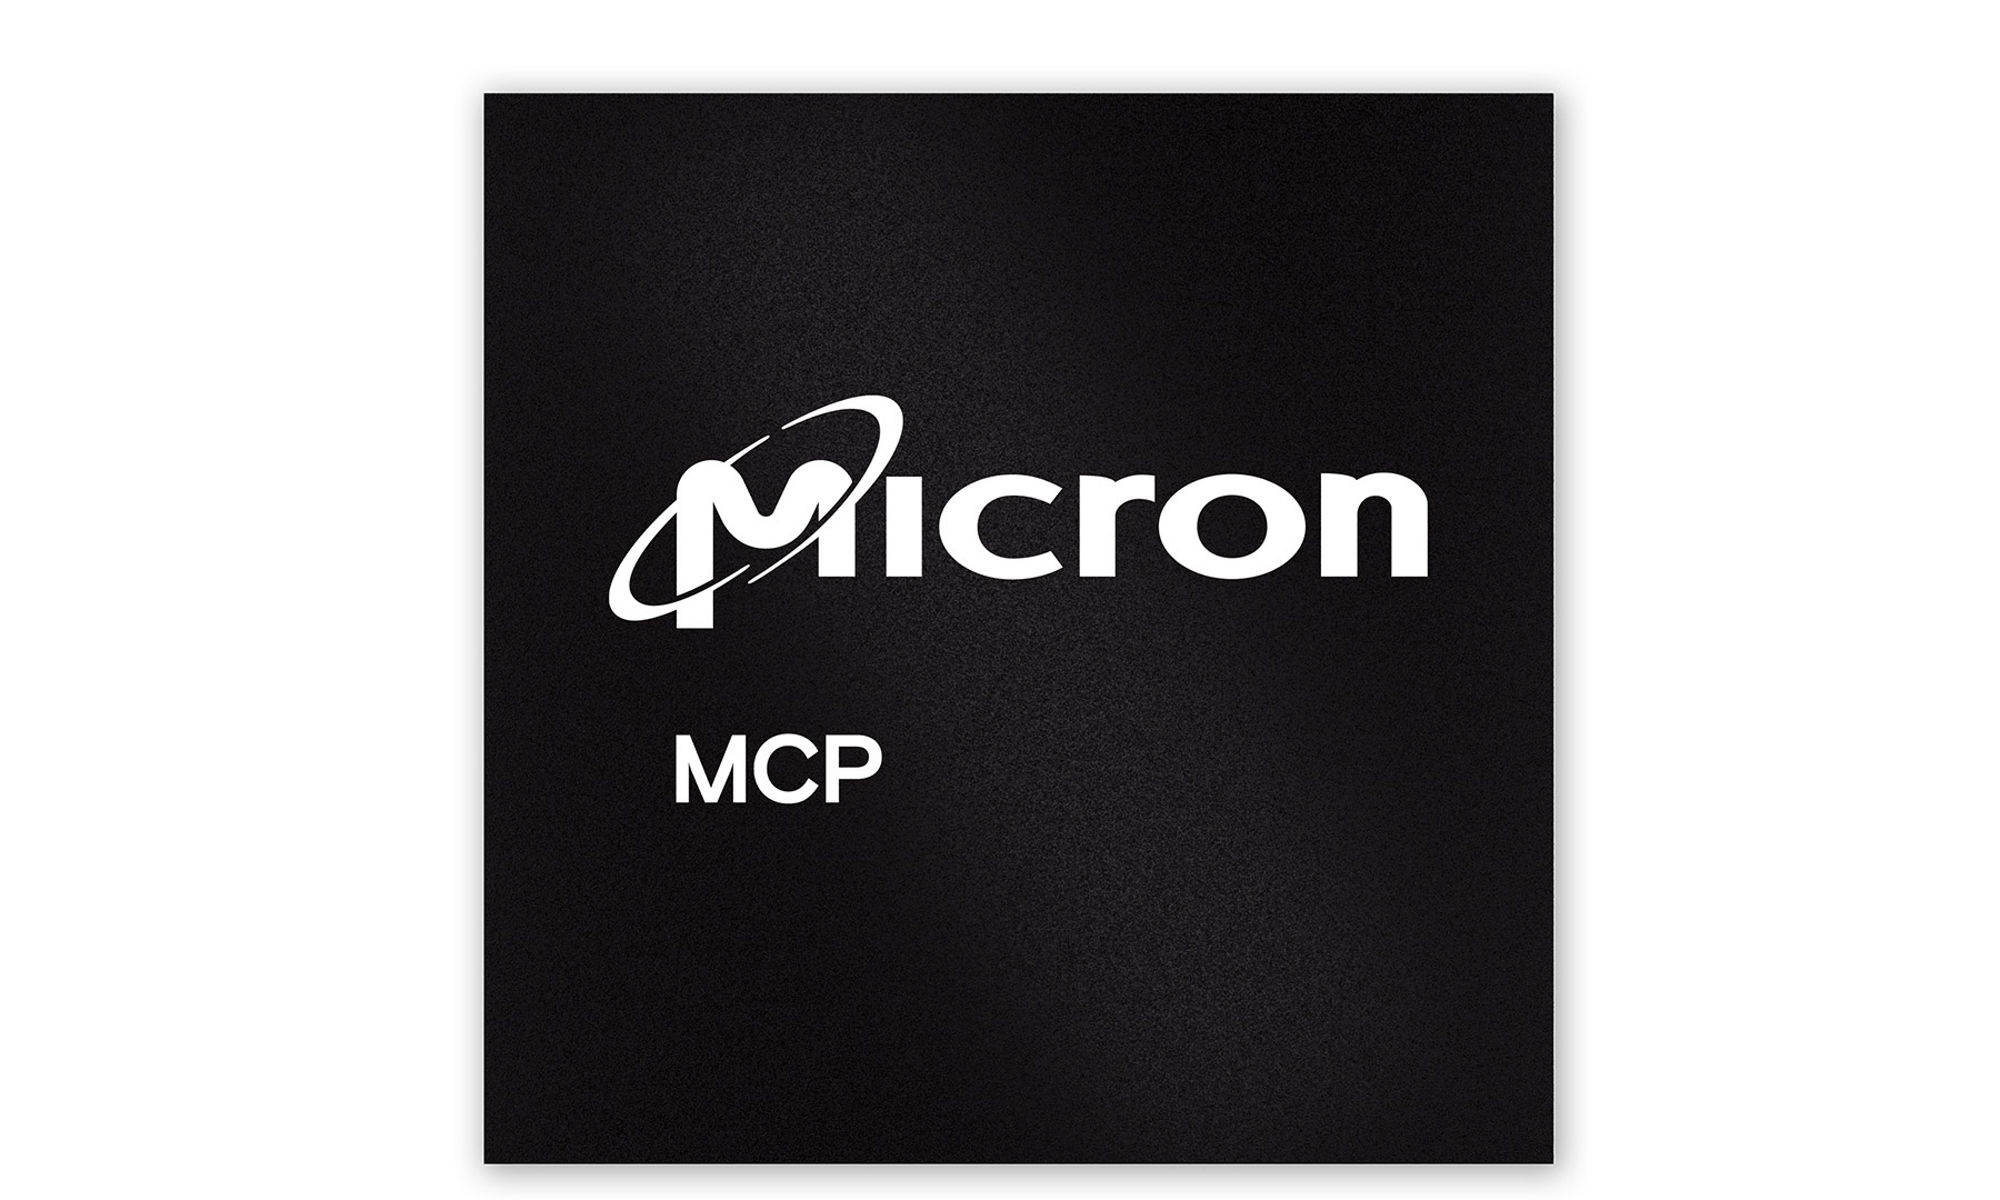 Micron MCPs